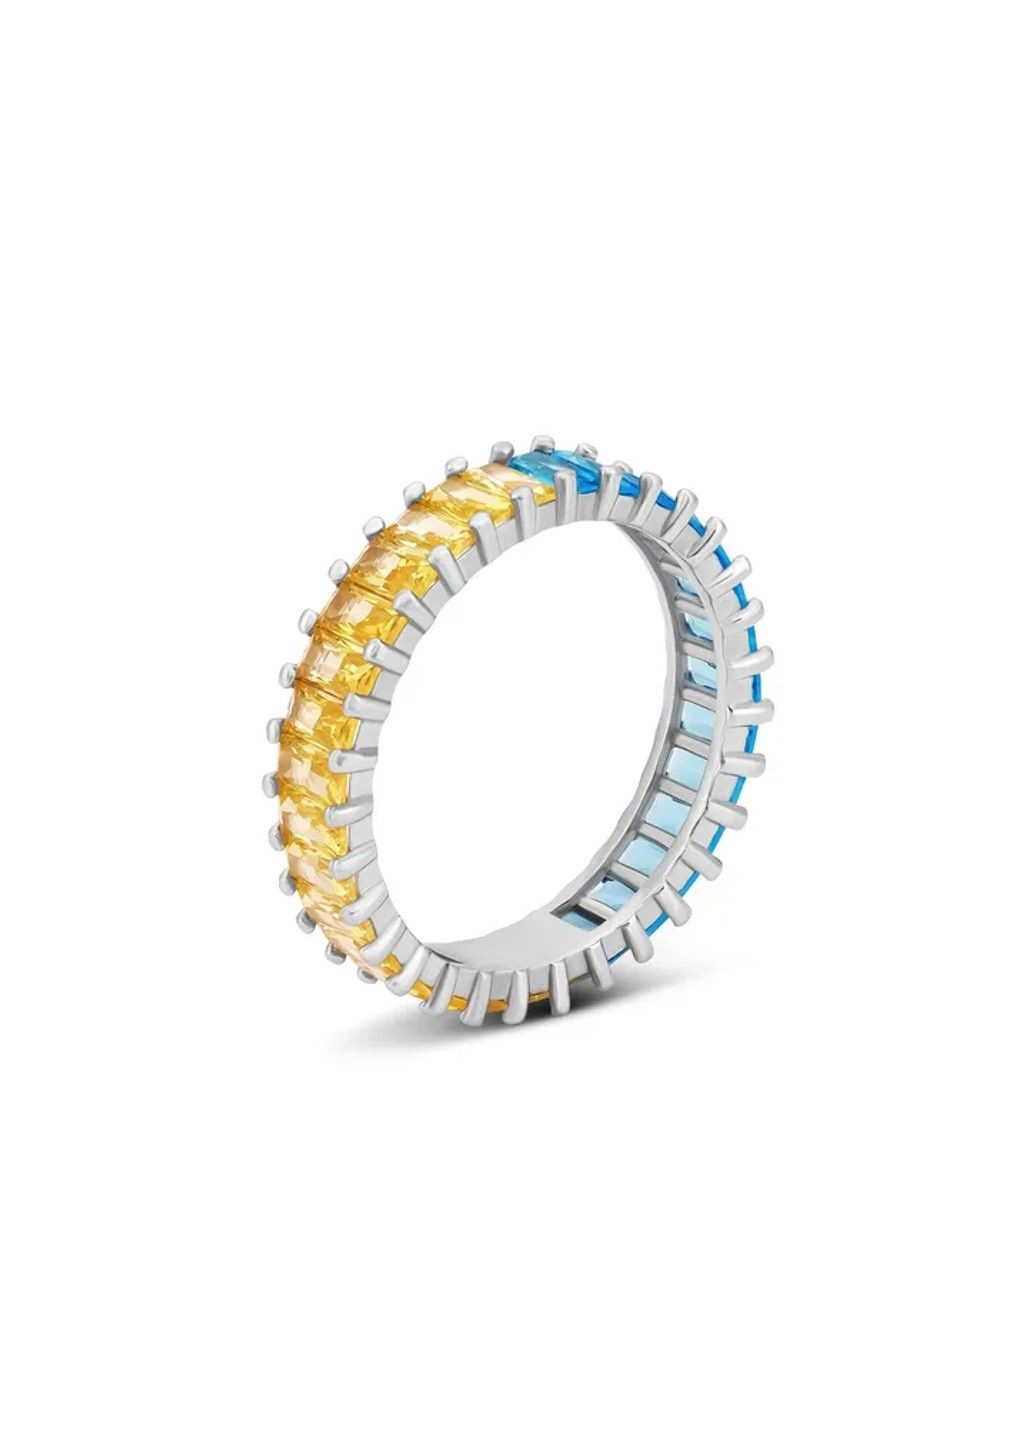 Серебряное кольцо Гламур желто-голубое 17р UMAX (291883762)